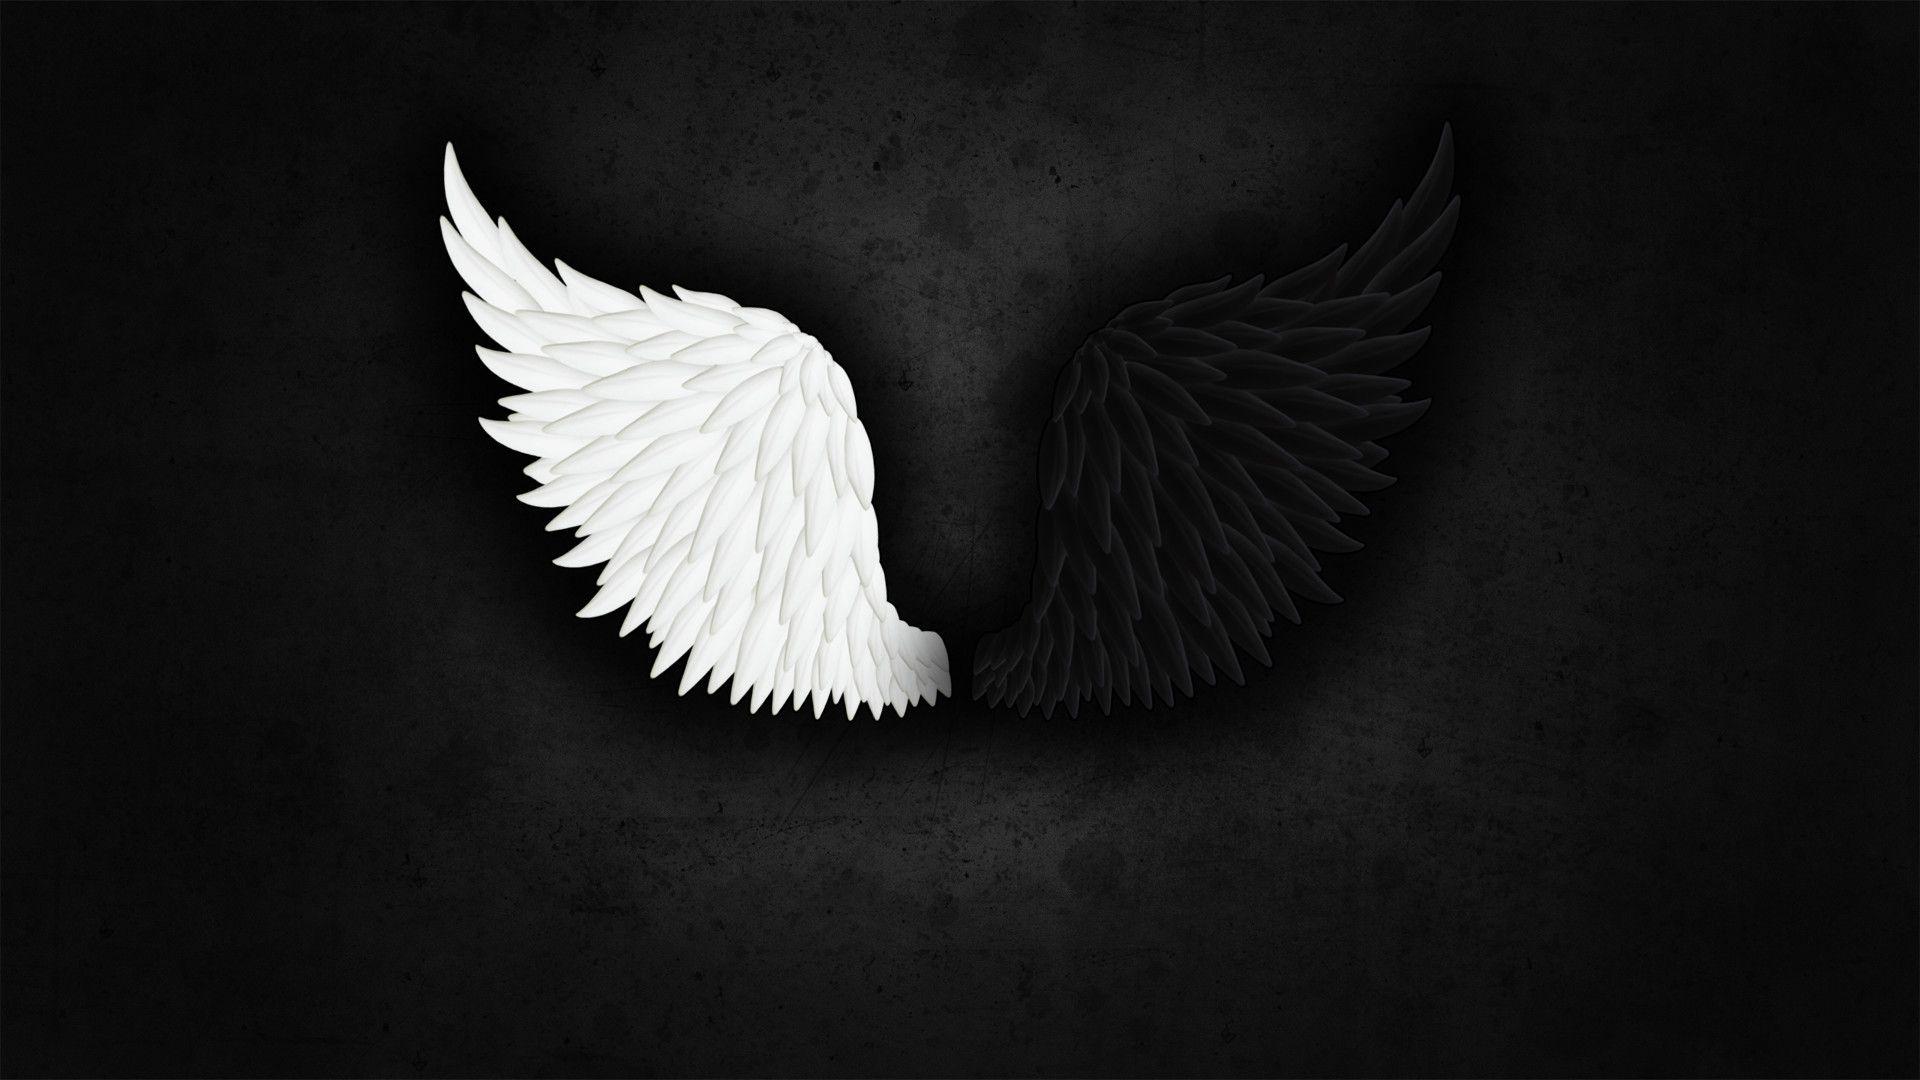 Black Angel Wings Wallpapers - Top Free Black Angel Wings Backgrounds